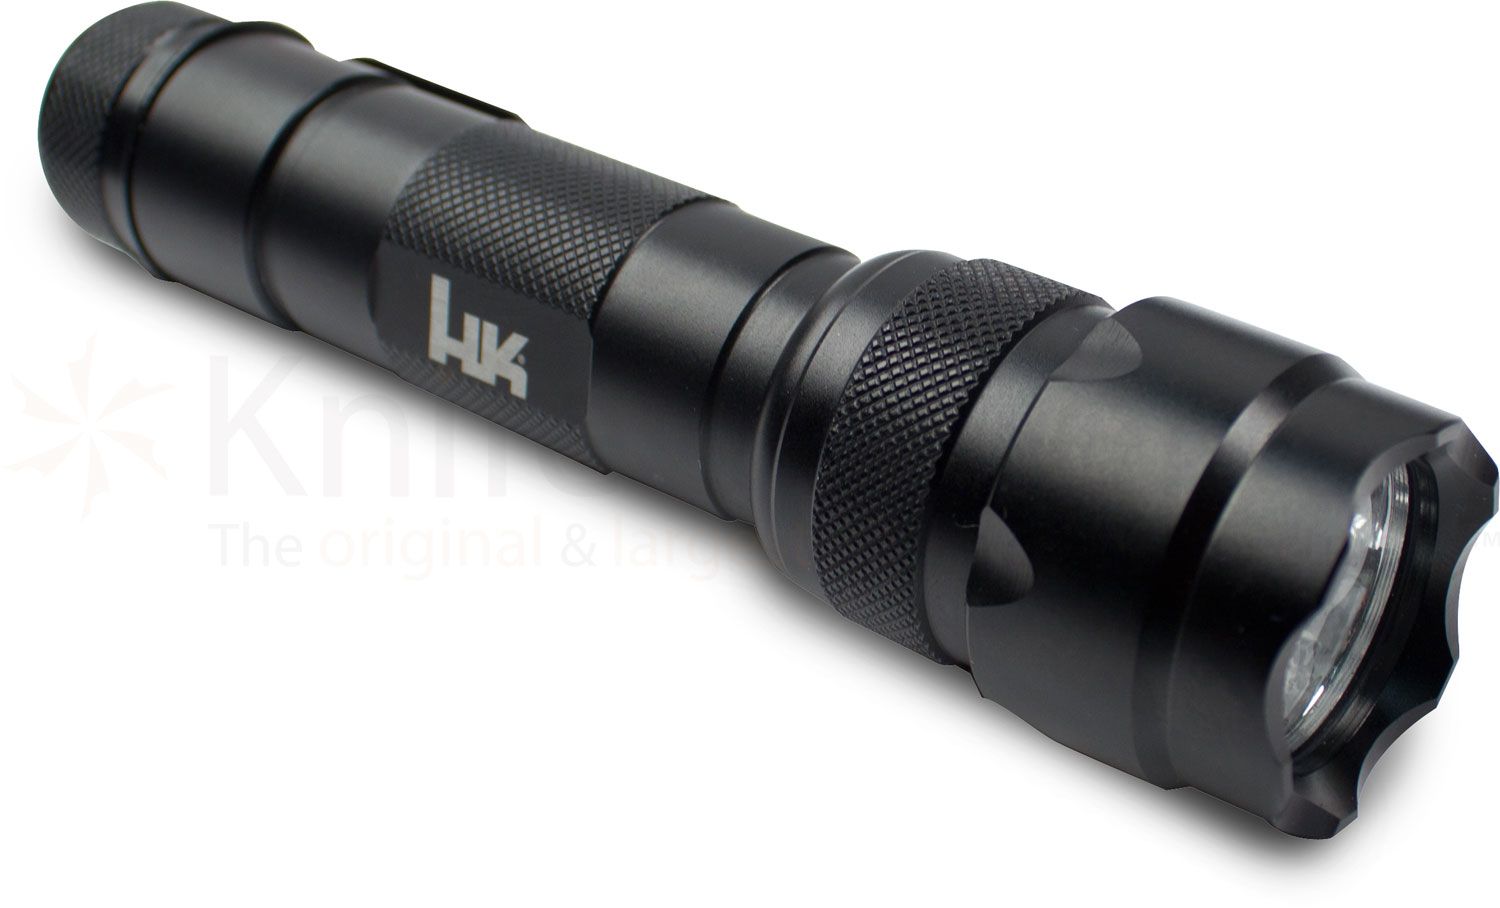 Heckler & Koch 14443T Tactical Multi-Tool, Nylon Sheath